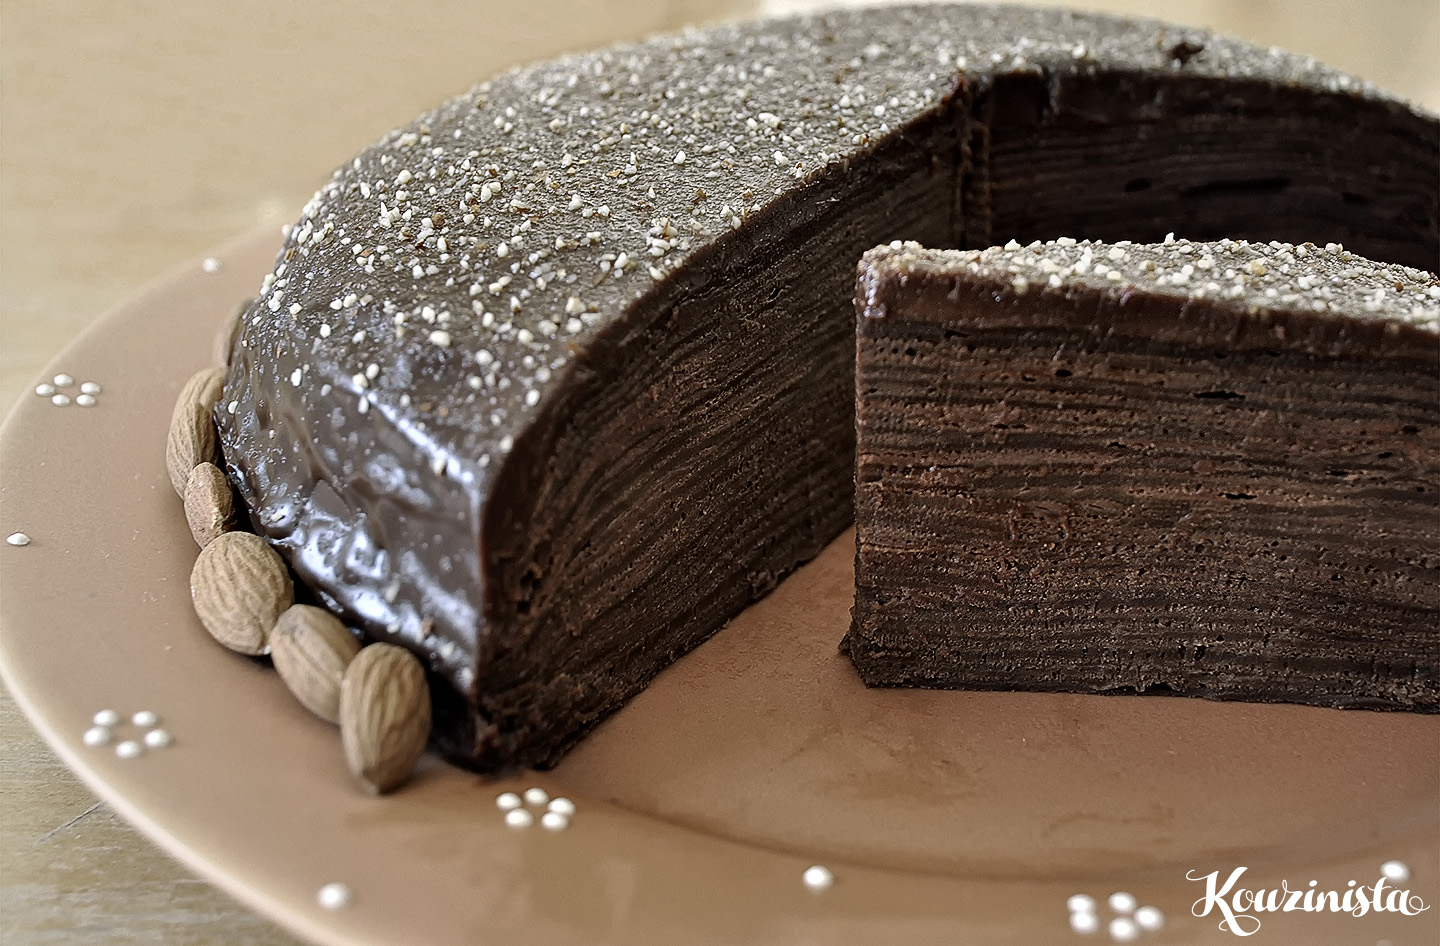 Τούρτα σοκολάτα-καραμέλα με κρέπες / Chocolate caramel crepe cake